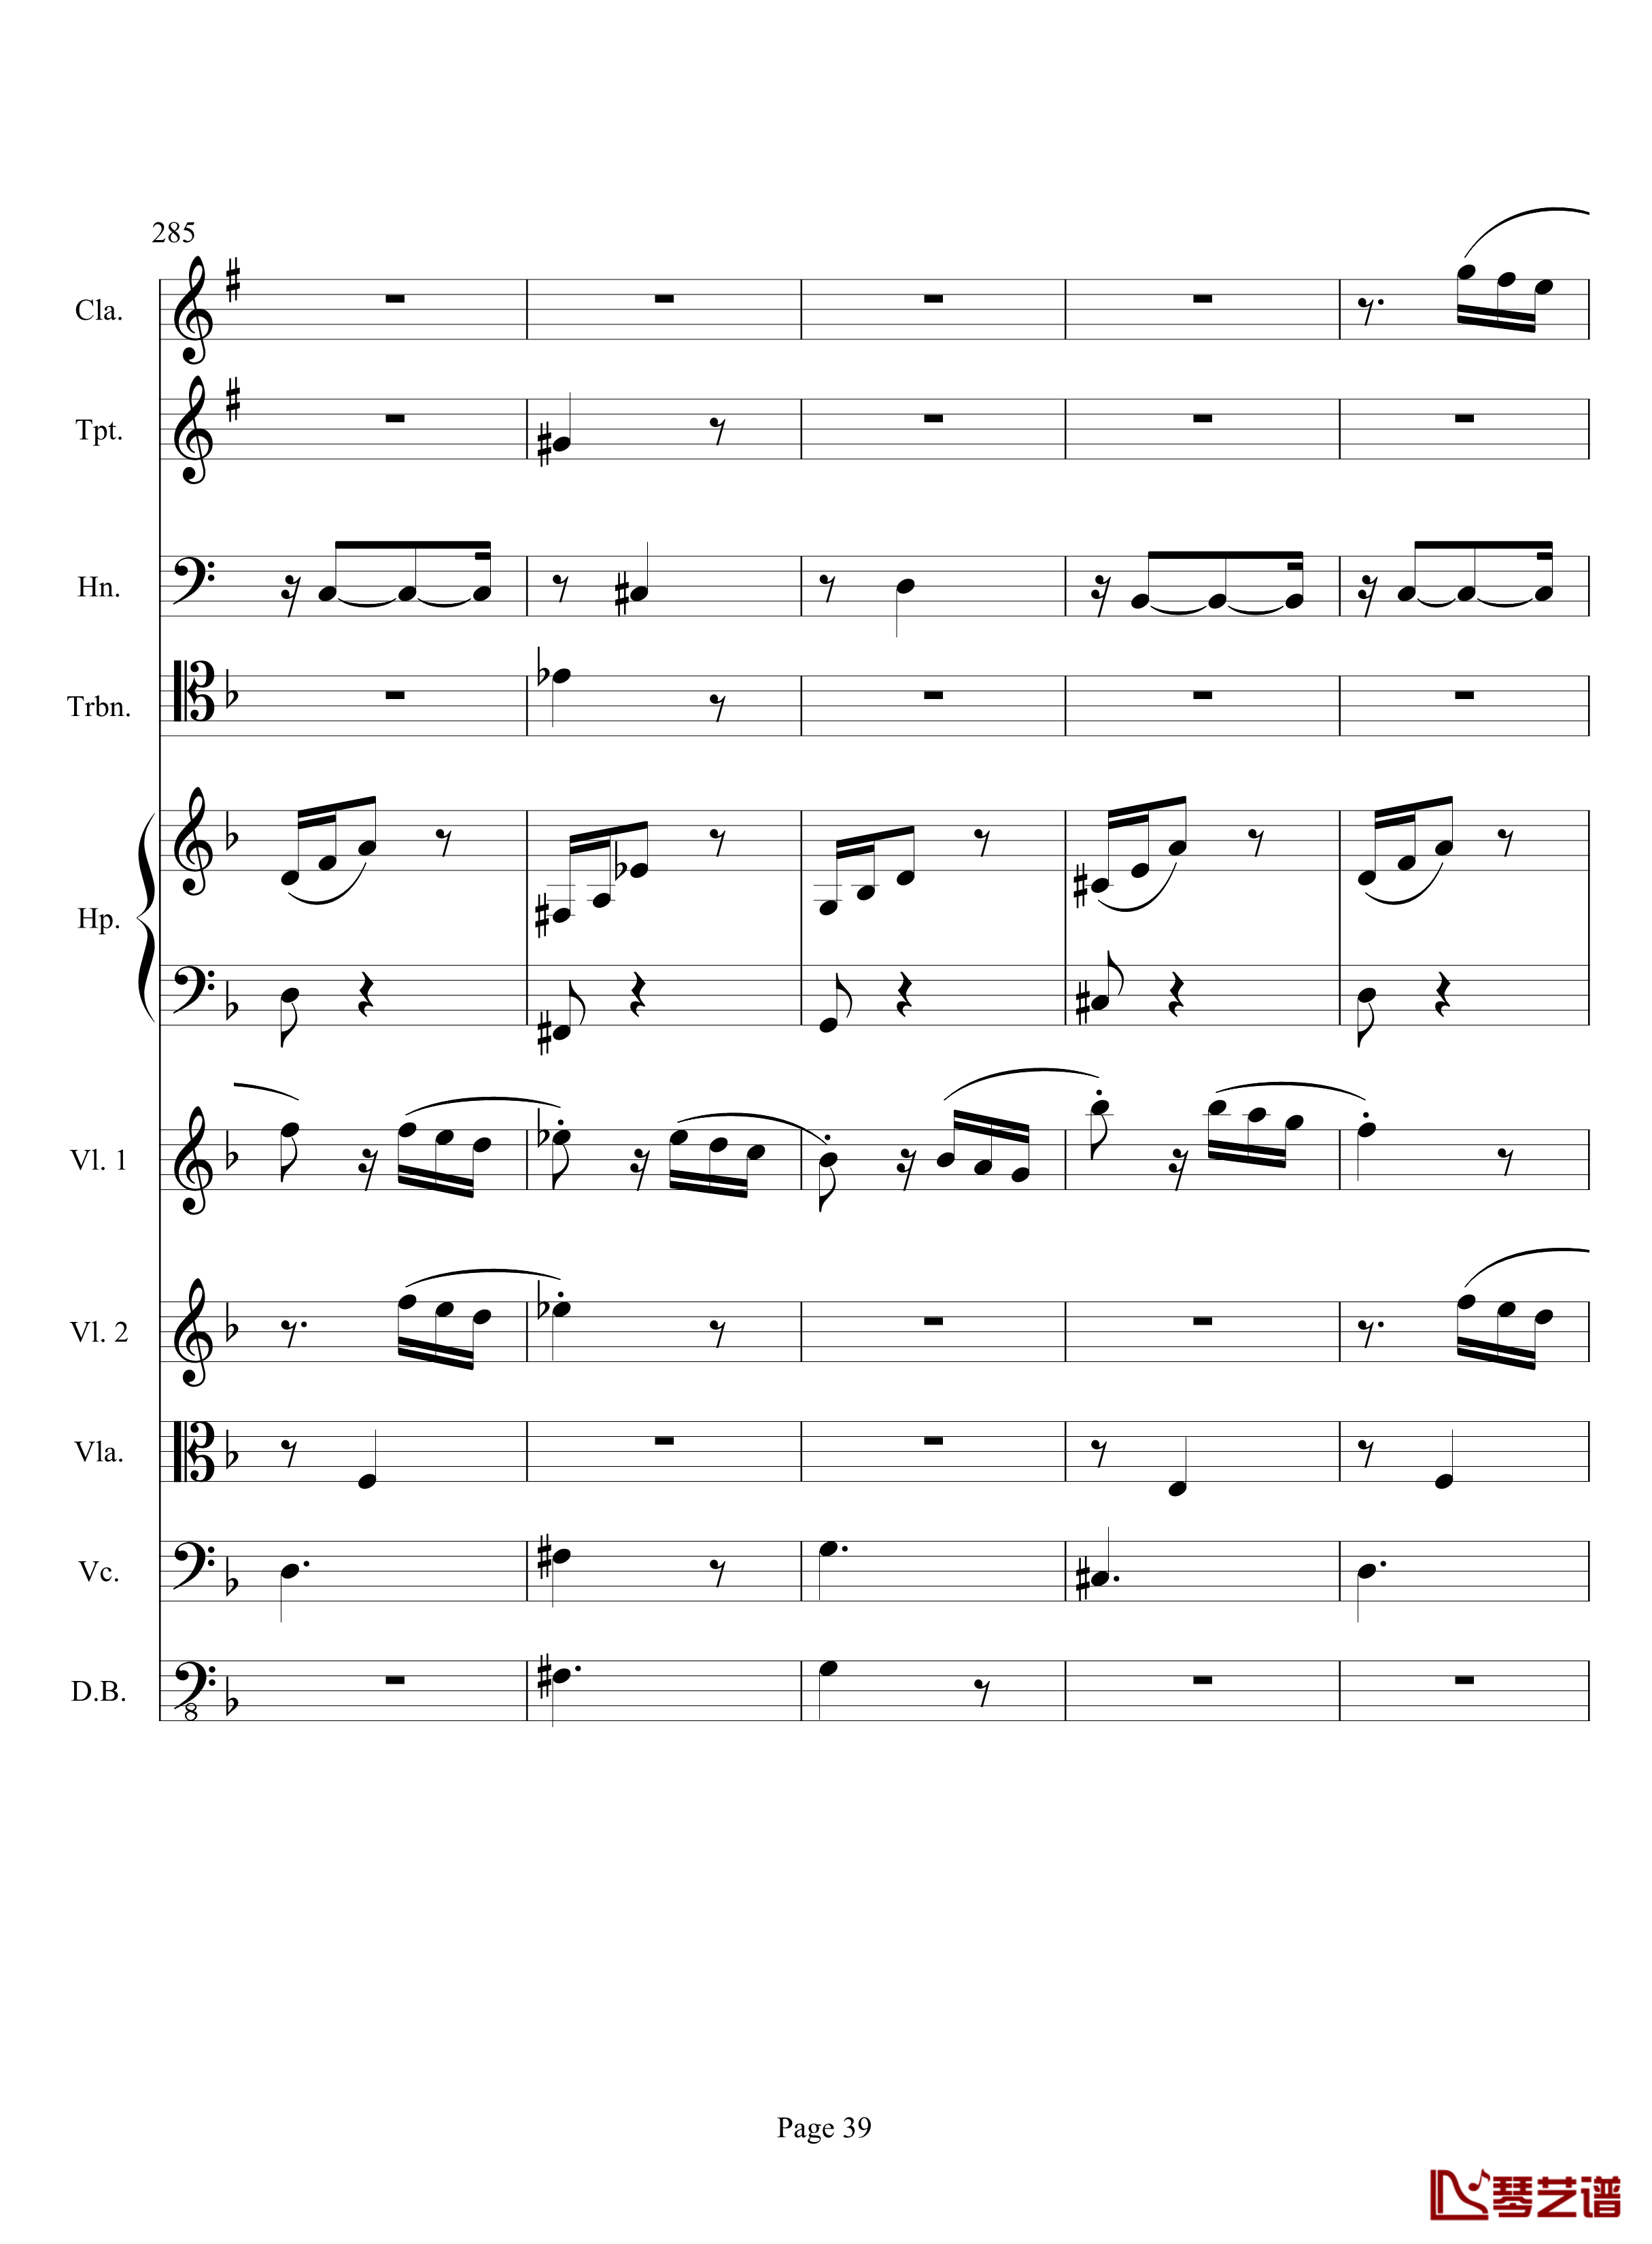 奏鸣曲之交响钢琴谱-第17首-Ⅲ-贝多芬-beethoven39